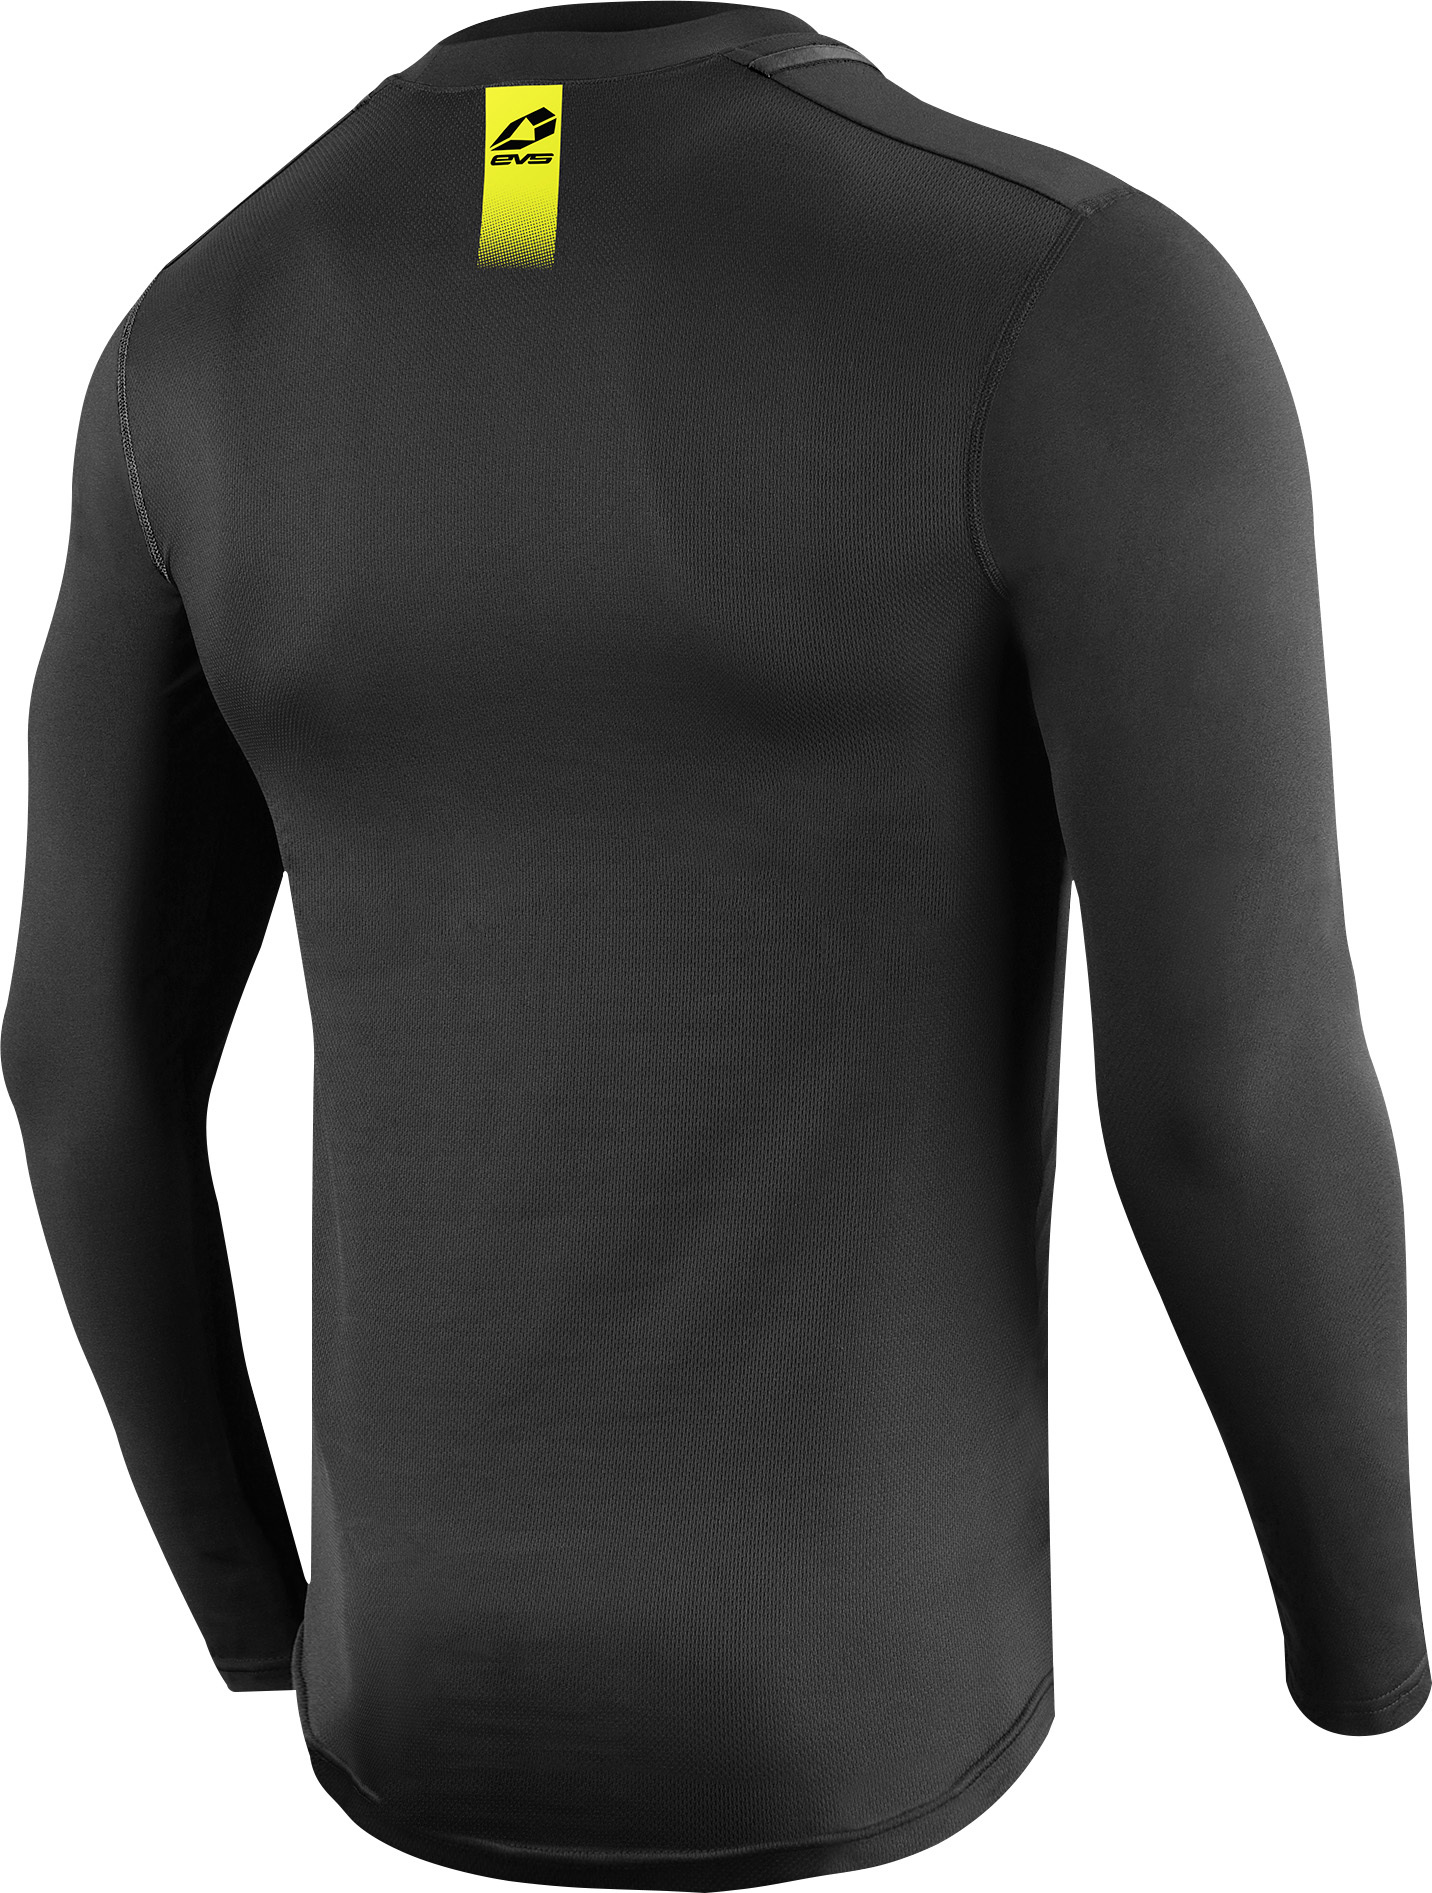 Long Sleeve Tug Shirt Black Youth Large - Click Image to Close